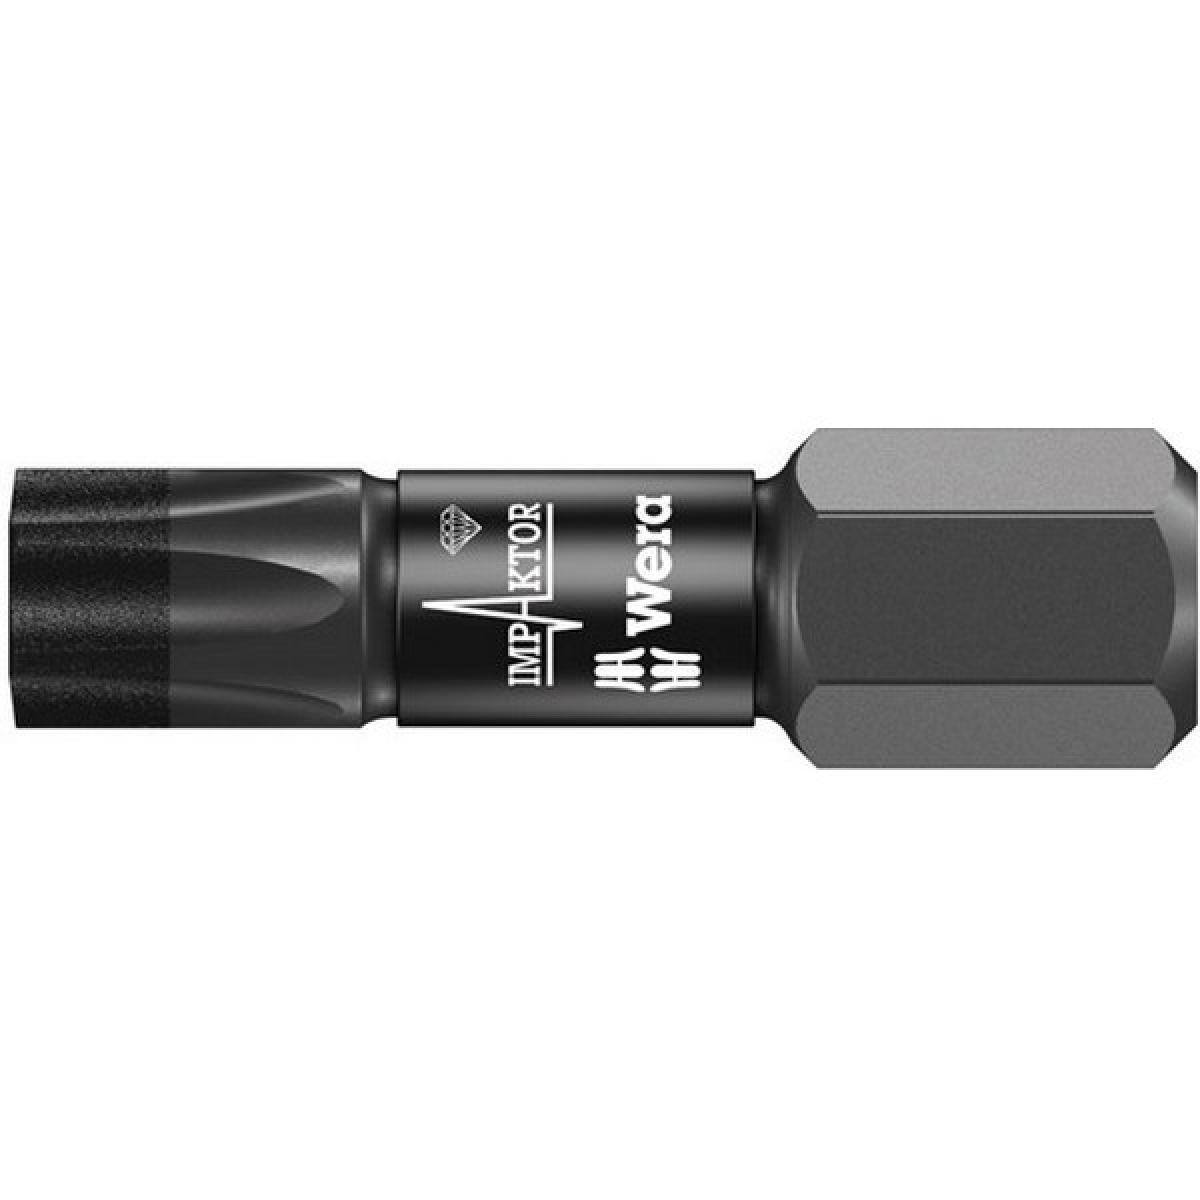 Wera - Embout pour vis femelle TORX® 1/4'' Impaktor, 25 mm de long, Dimensions : T 30, Long. totale 25 mm - Tournevis